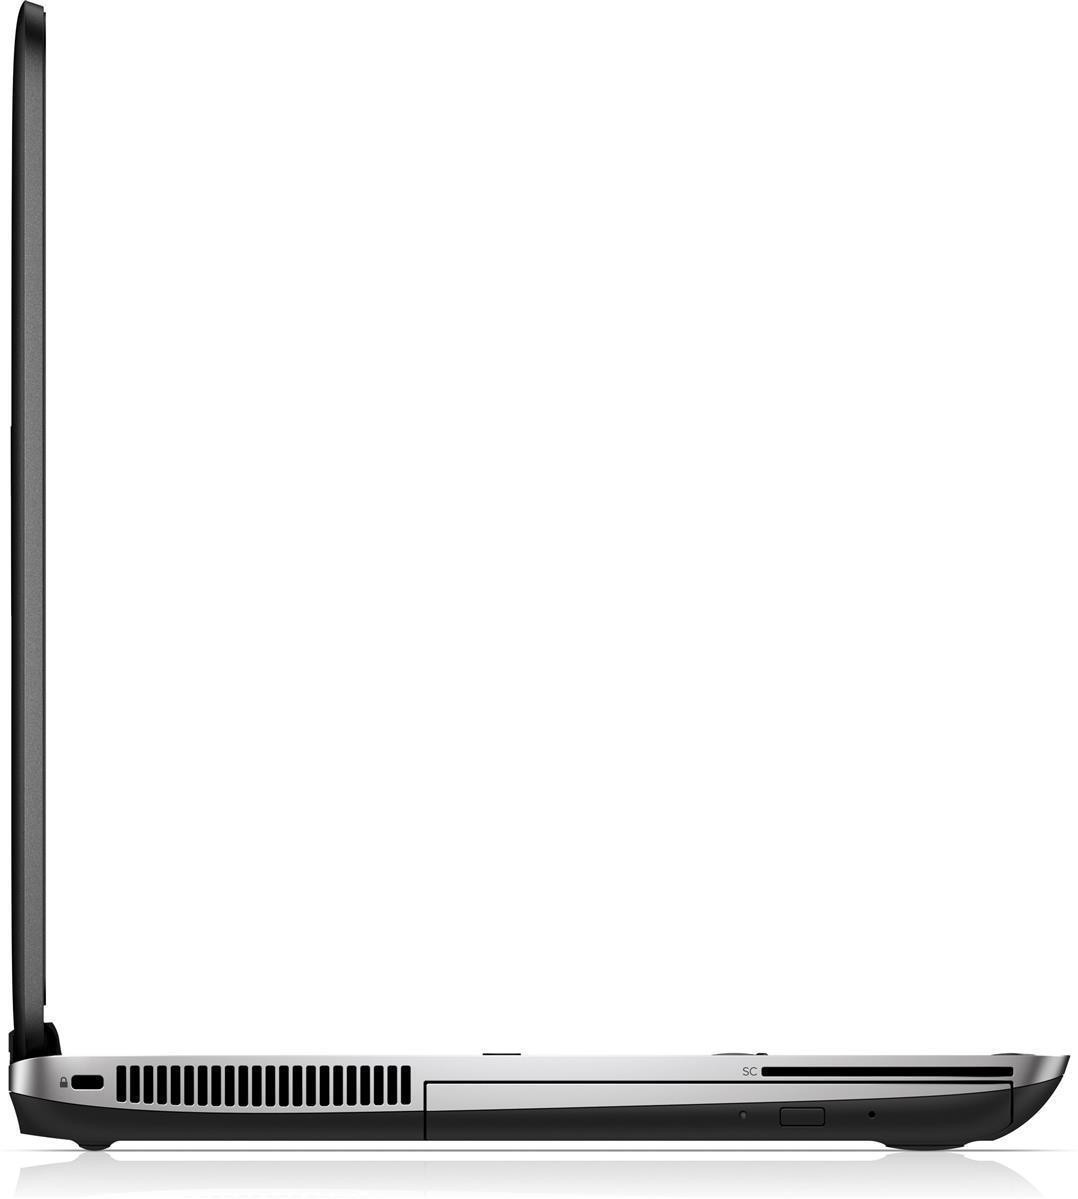 HP ProBook 640 G2 Intel Core i5-6200U 2.3GHz 8GB RAM 256GB SSD DVD Win 10 Pro